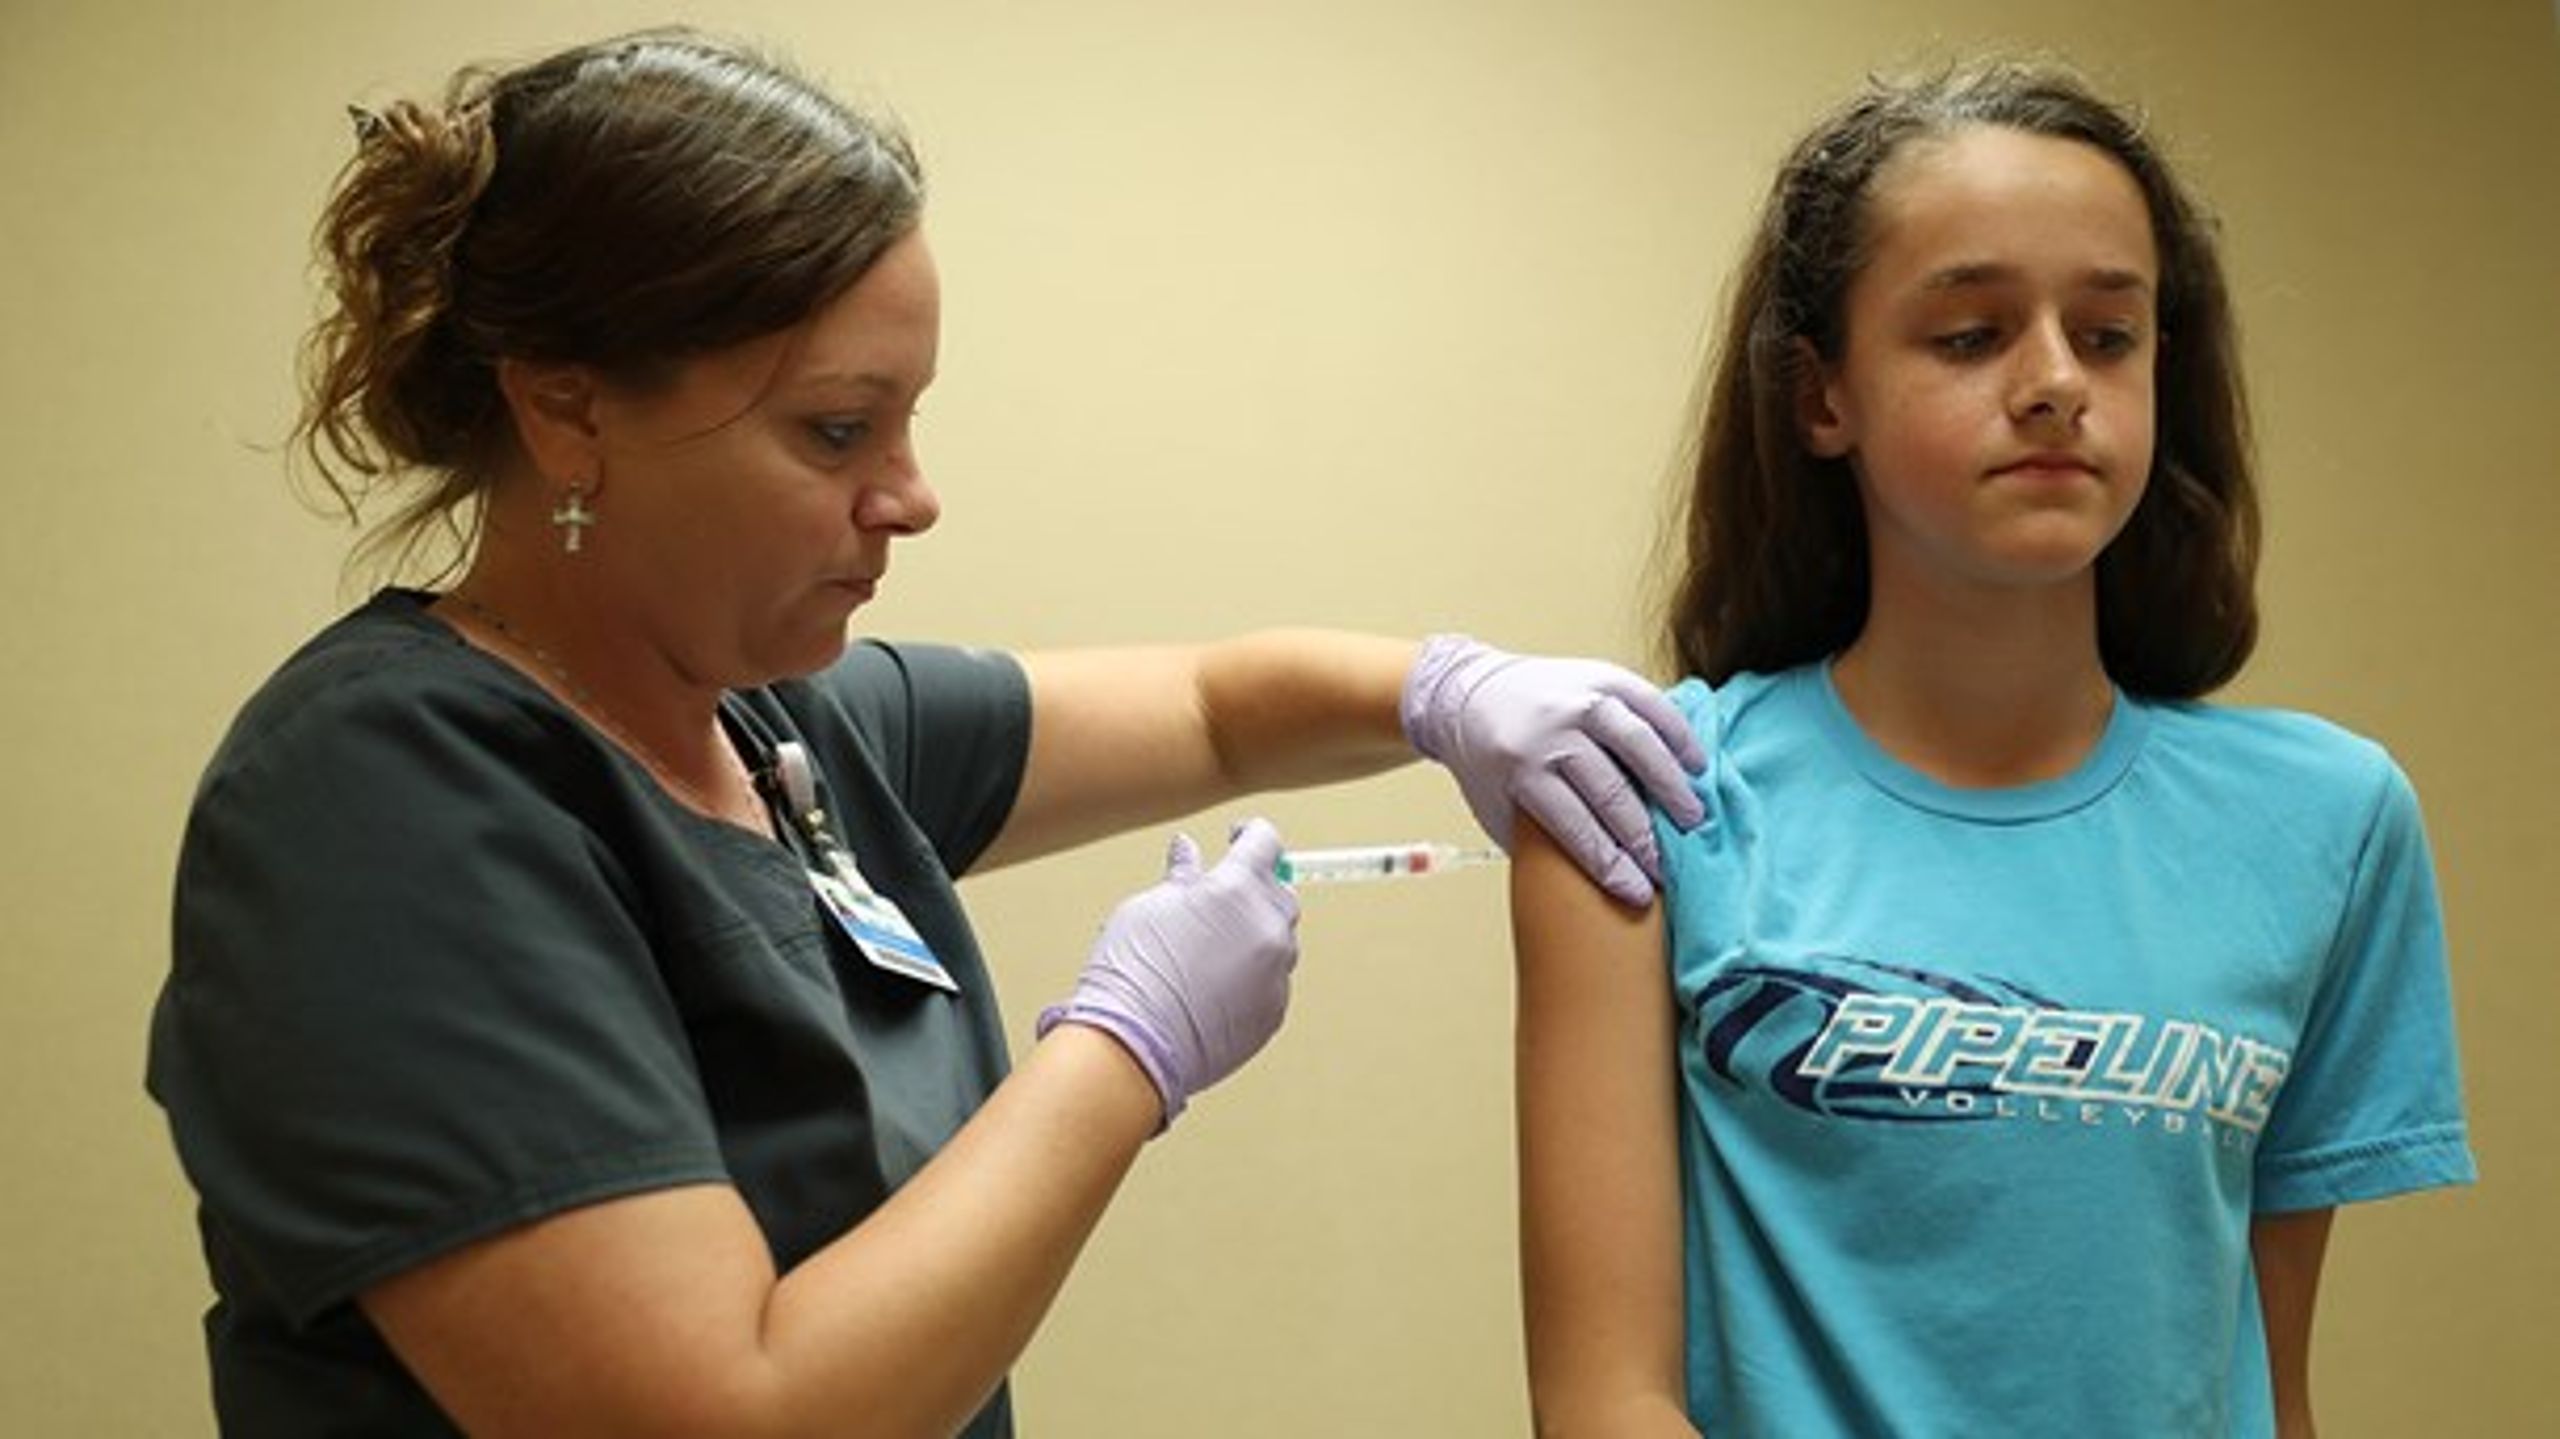 Sygeplejerske giver en 13-årig amerikansk pige vaccination mod Human Papilloma Virus (HPV). Vaccinen har været en del af det danske børnevaccinationsprogram siden 1. januar 2009.